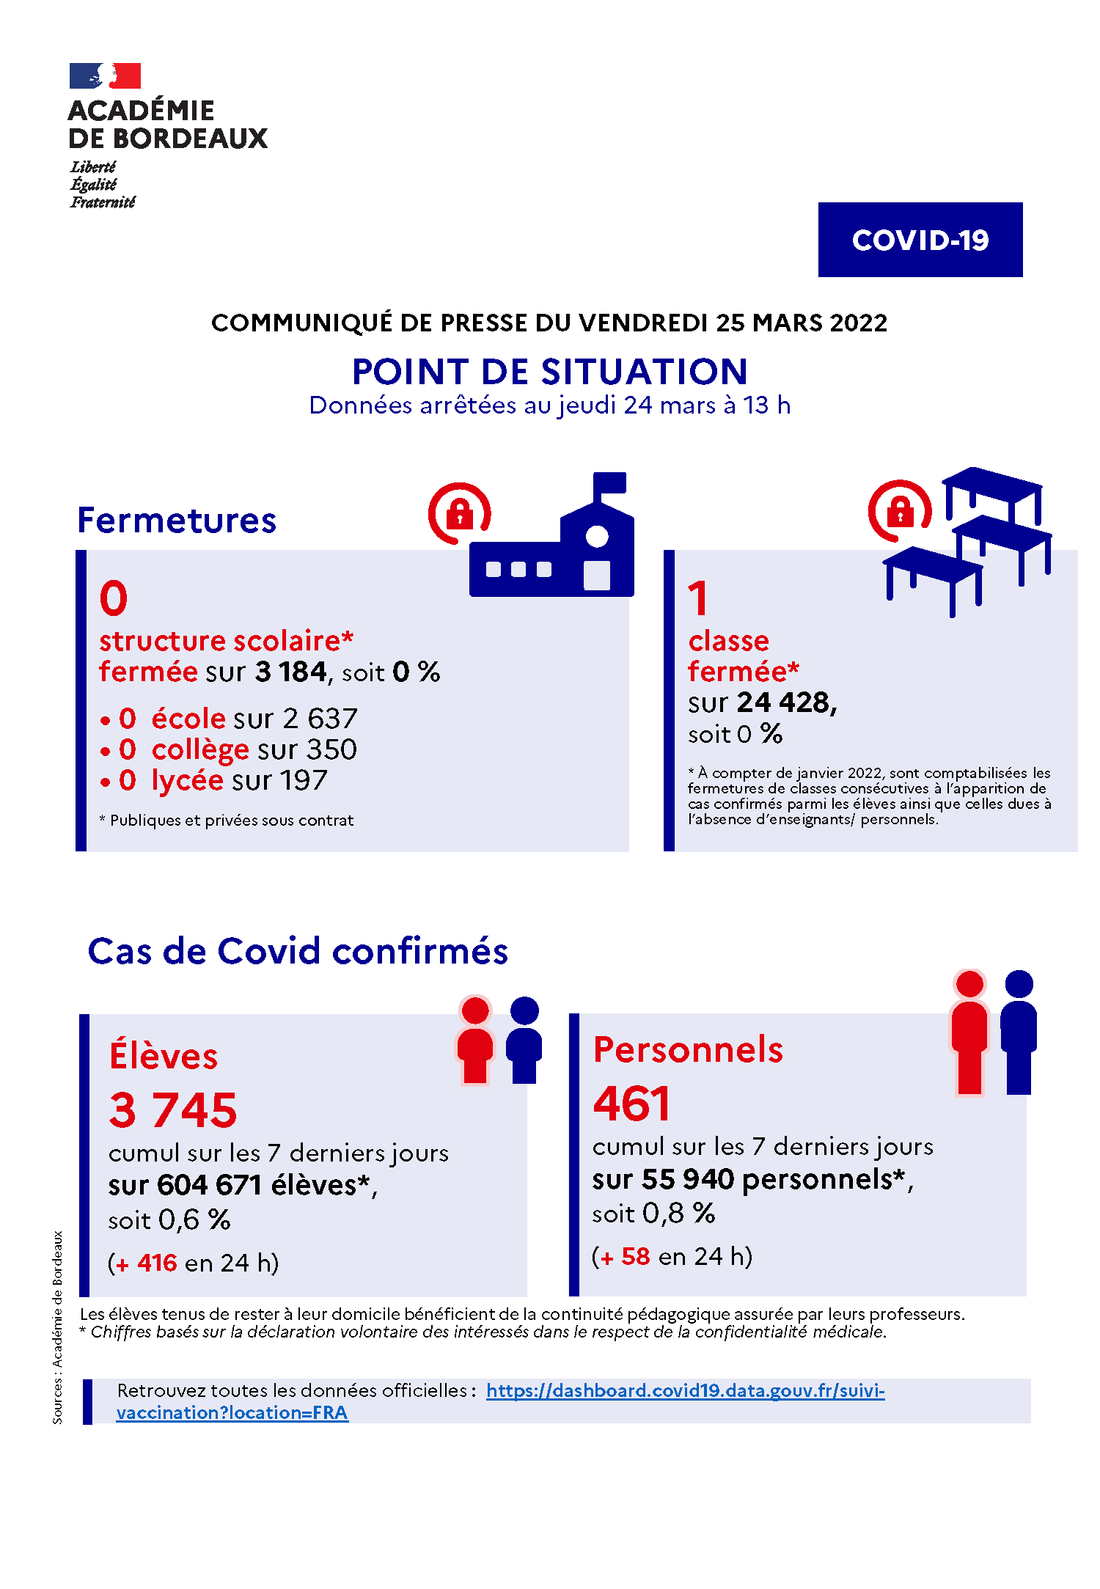 Communiqué - Point de situation Covid-19 dans l'académie de Bordeaux du 25/03/22